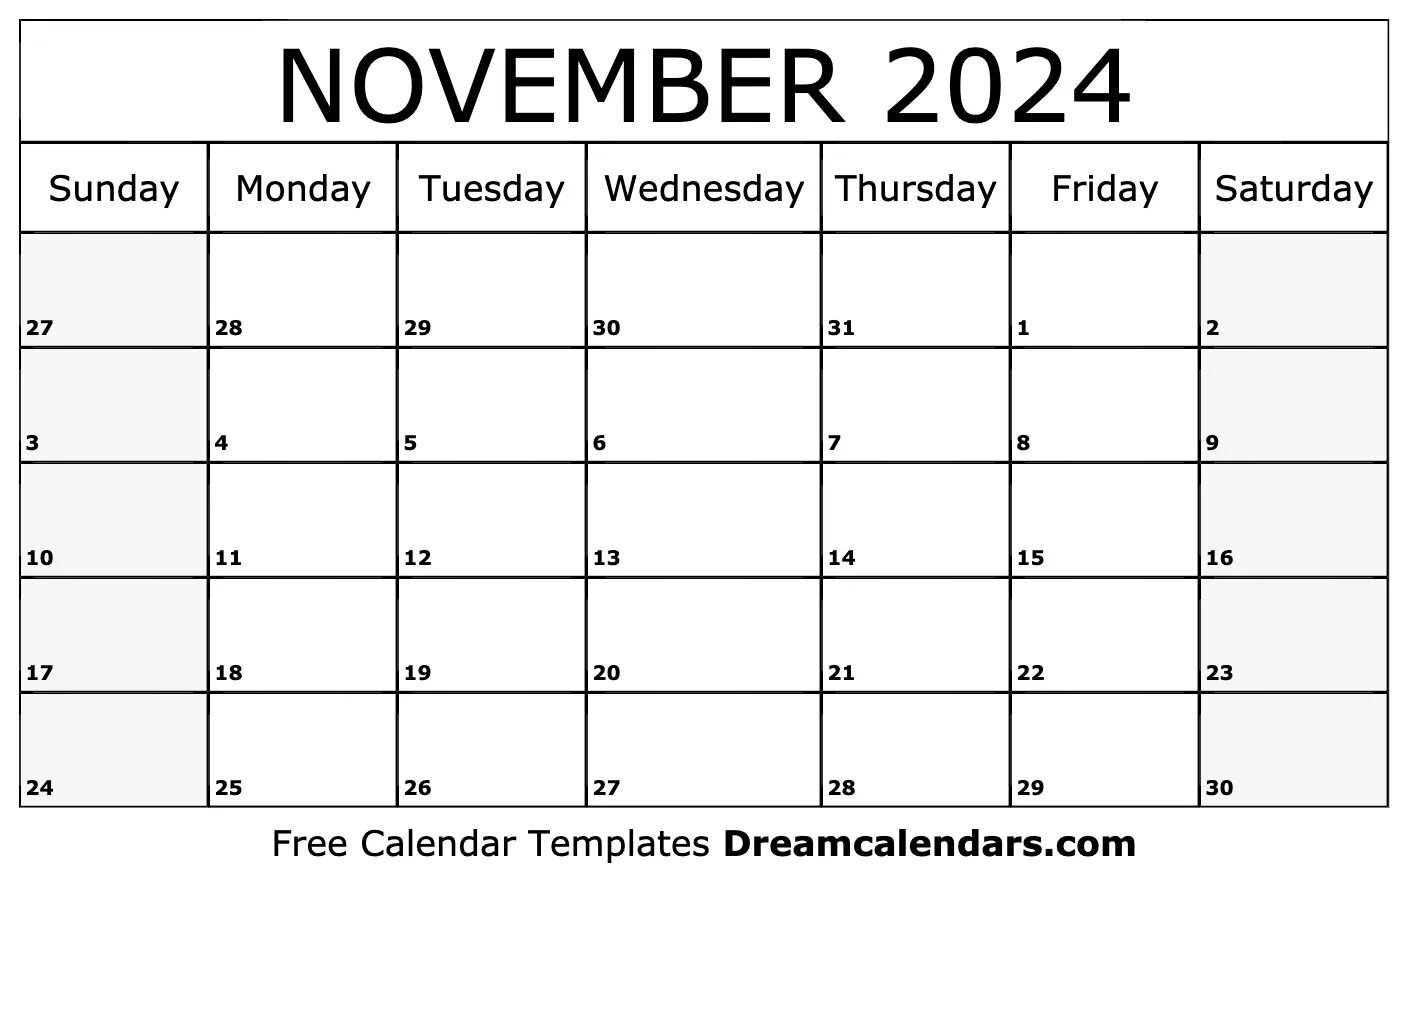 Ноябрь 2024. Календарь на 2075 год. Календарь 2024. Nov 2024.